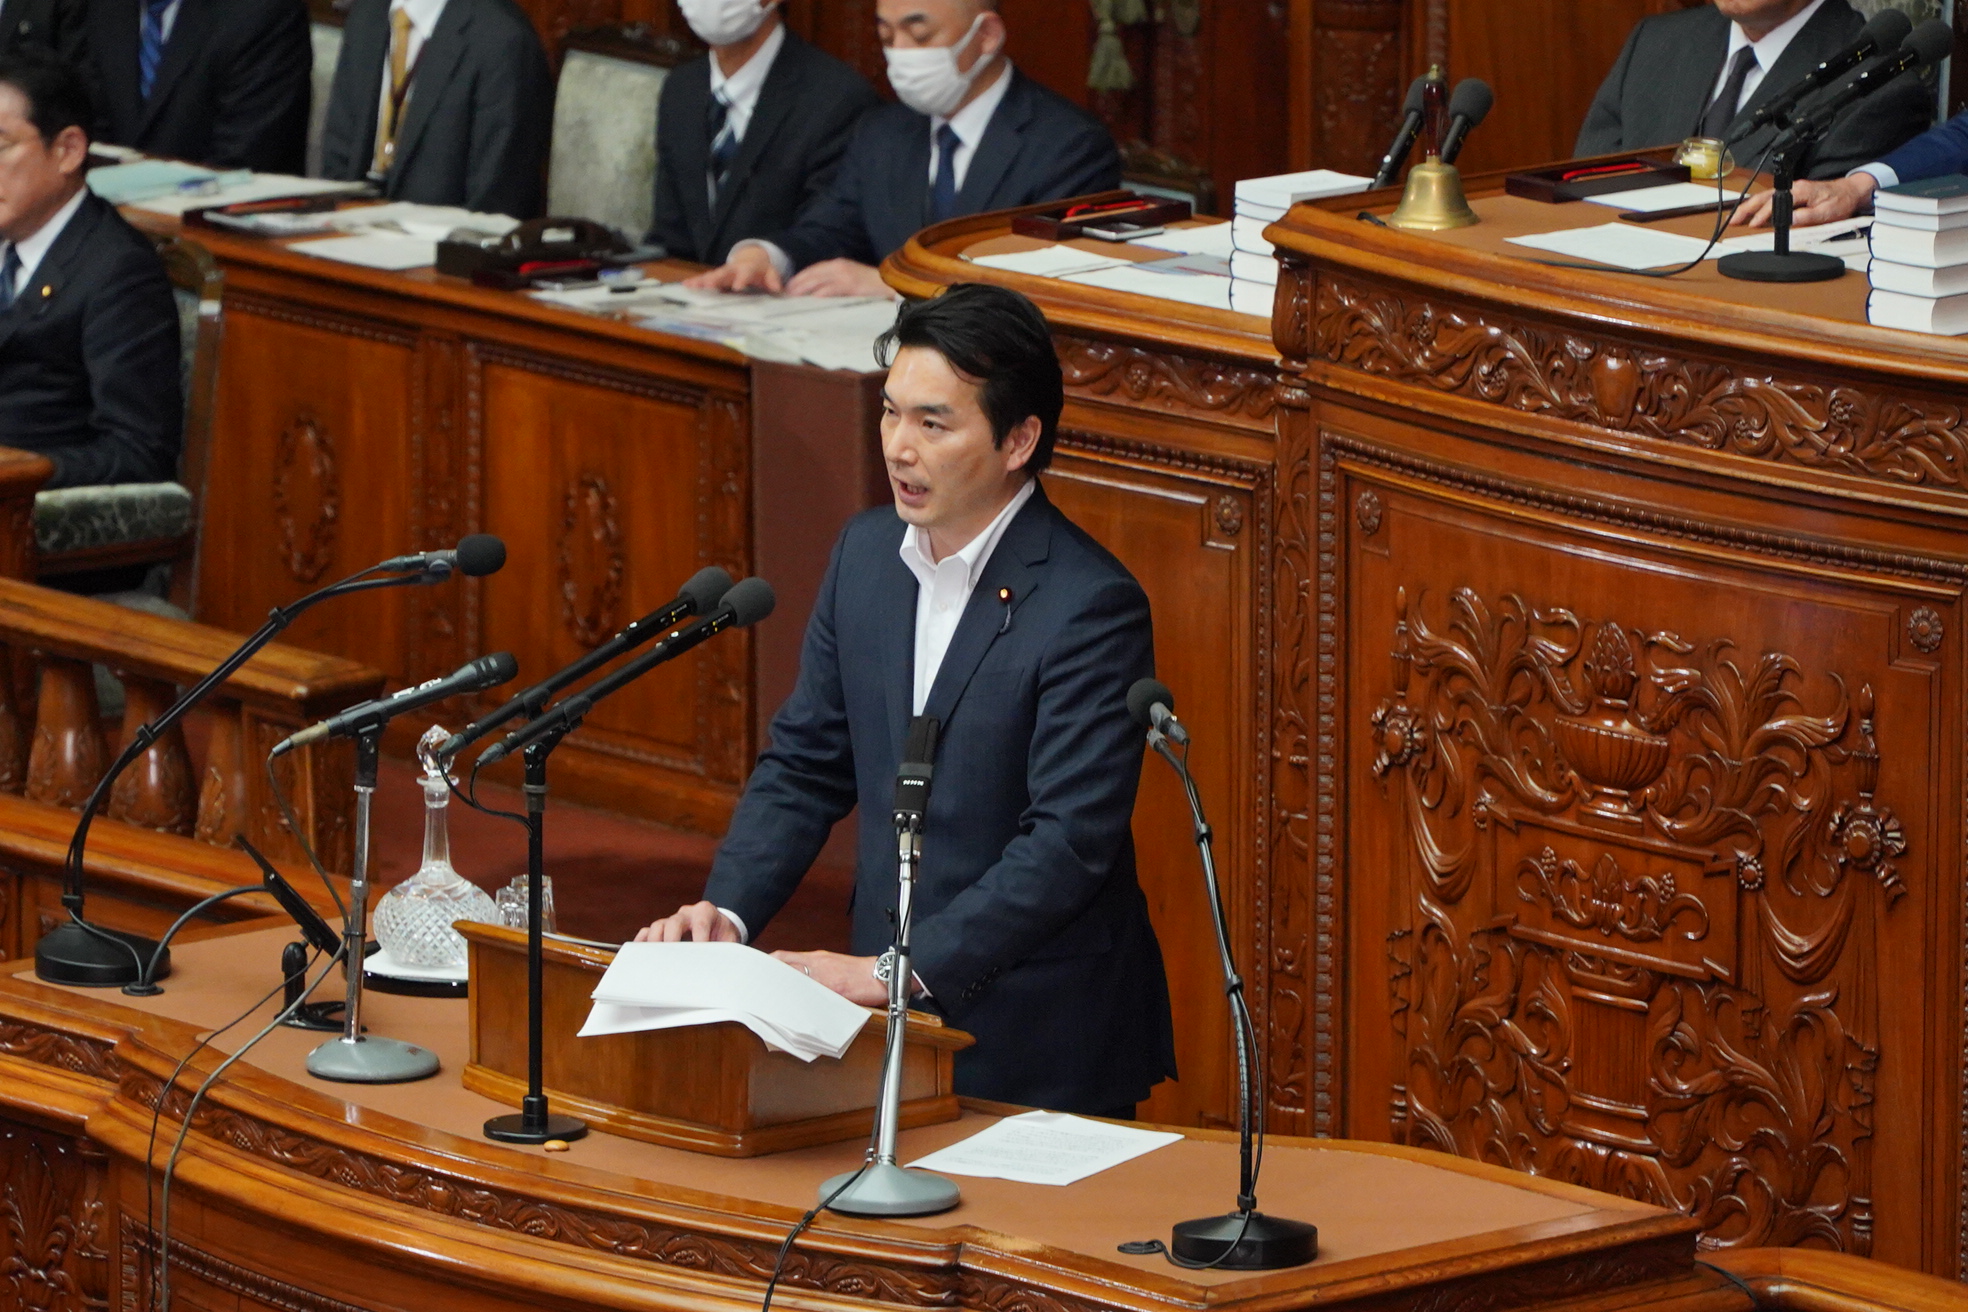 【衆本会議】浅野哲青年局長が内閣不信任決議案に対し反対の立場で討論